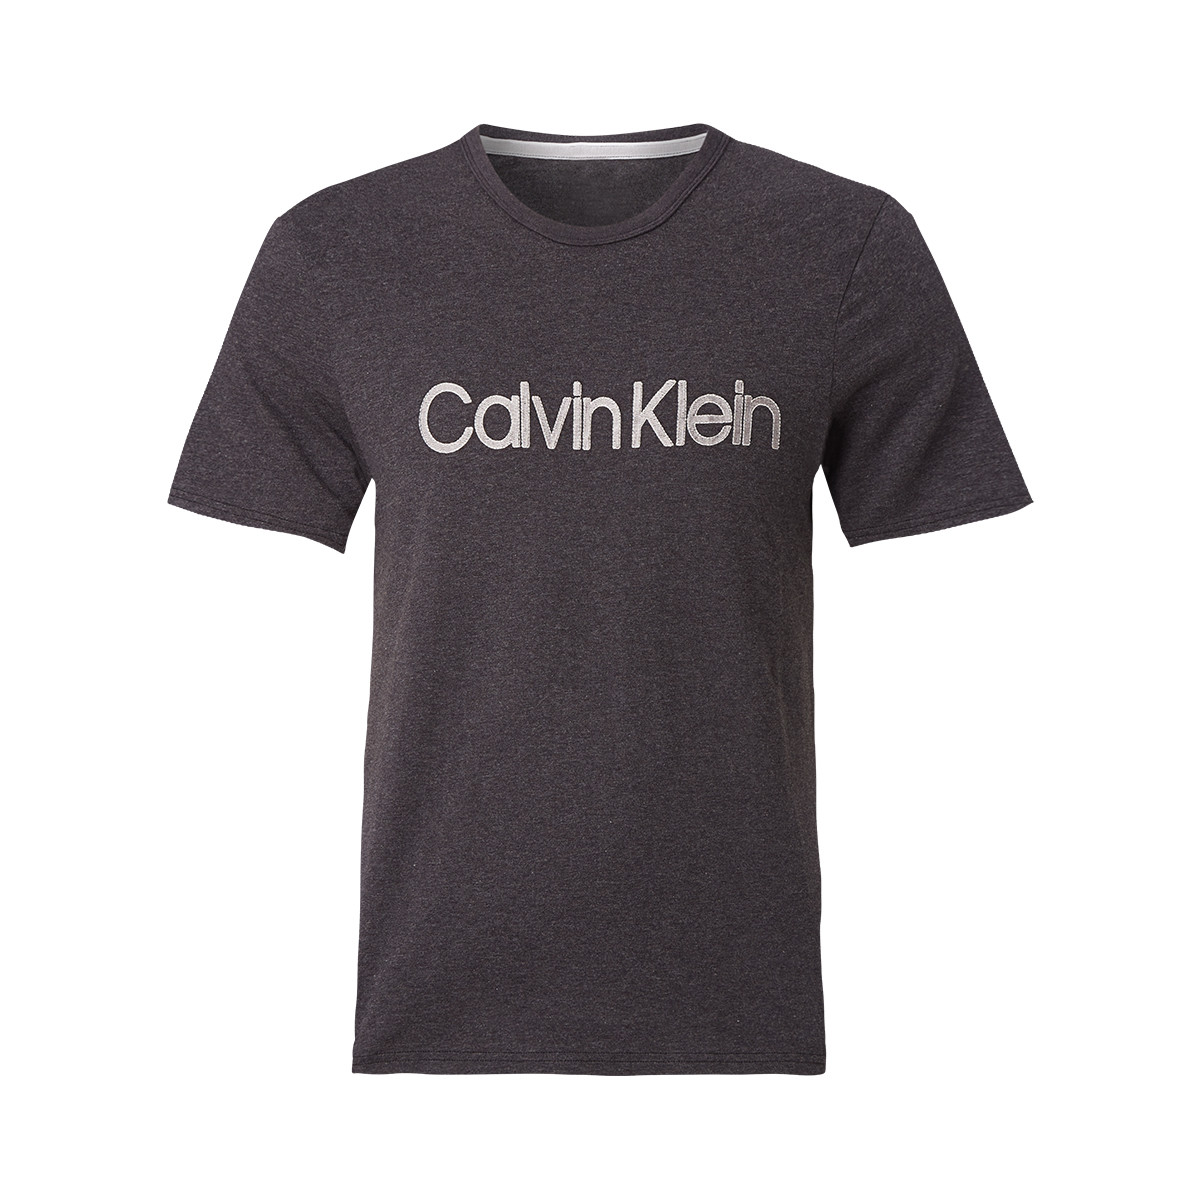 Se Calvin Klein T-shirt, Farve: Heather, Størrelse: XS, Dame hos Netlingeri.dk